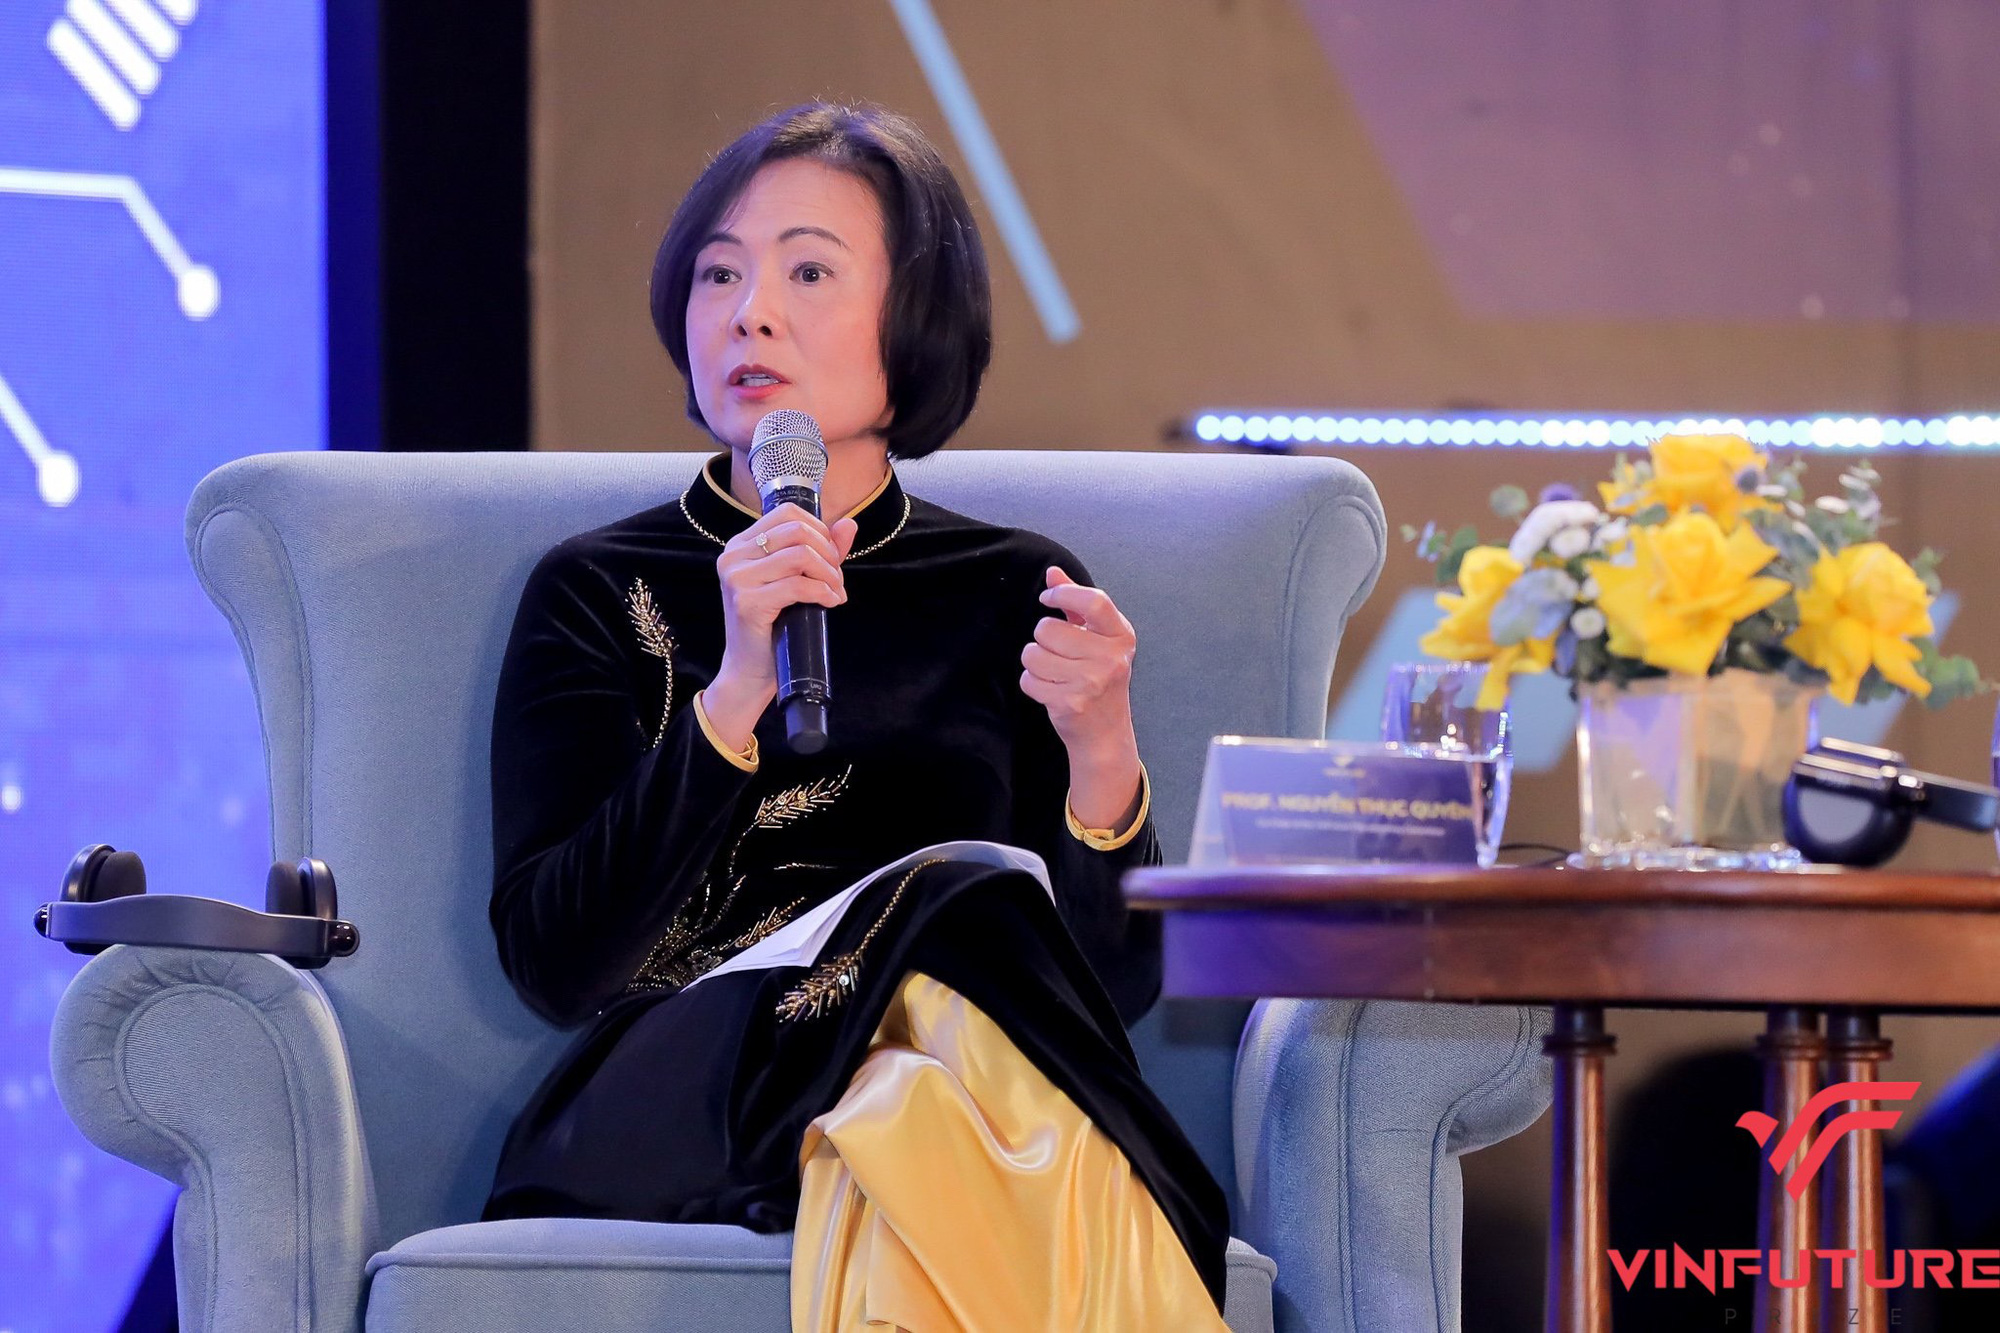 Nữ giáo sư gốc Việt duy nhất của Hội đồng Giải thưởng VinFuture: Nhà khoa học top đầu thế giới về vật liệu năng lượng với 16 năm tuổi thơ không có điện - Ảnh 2.